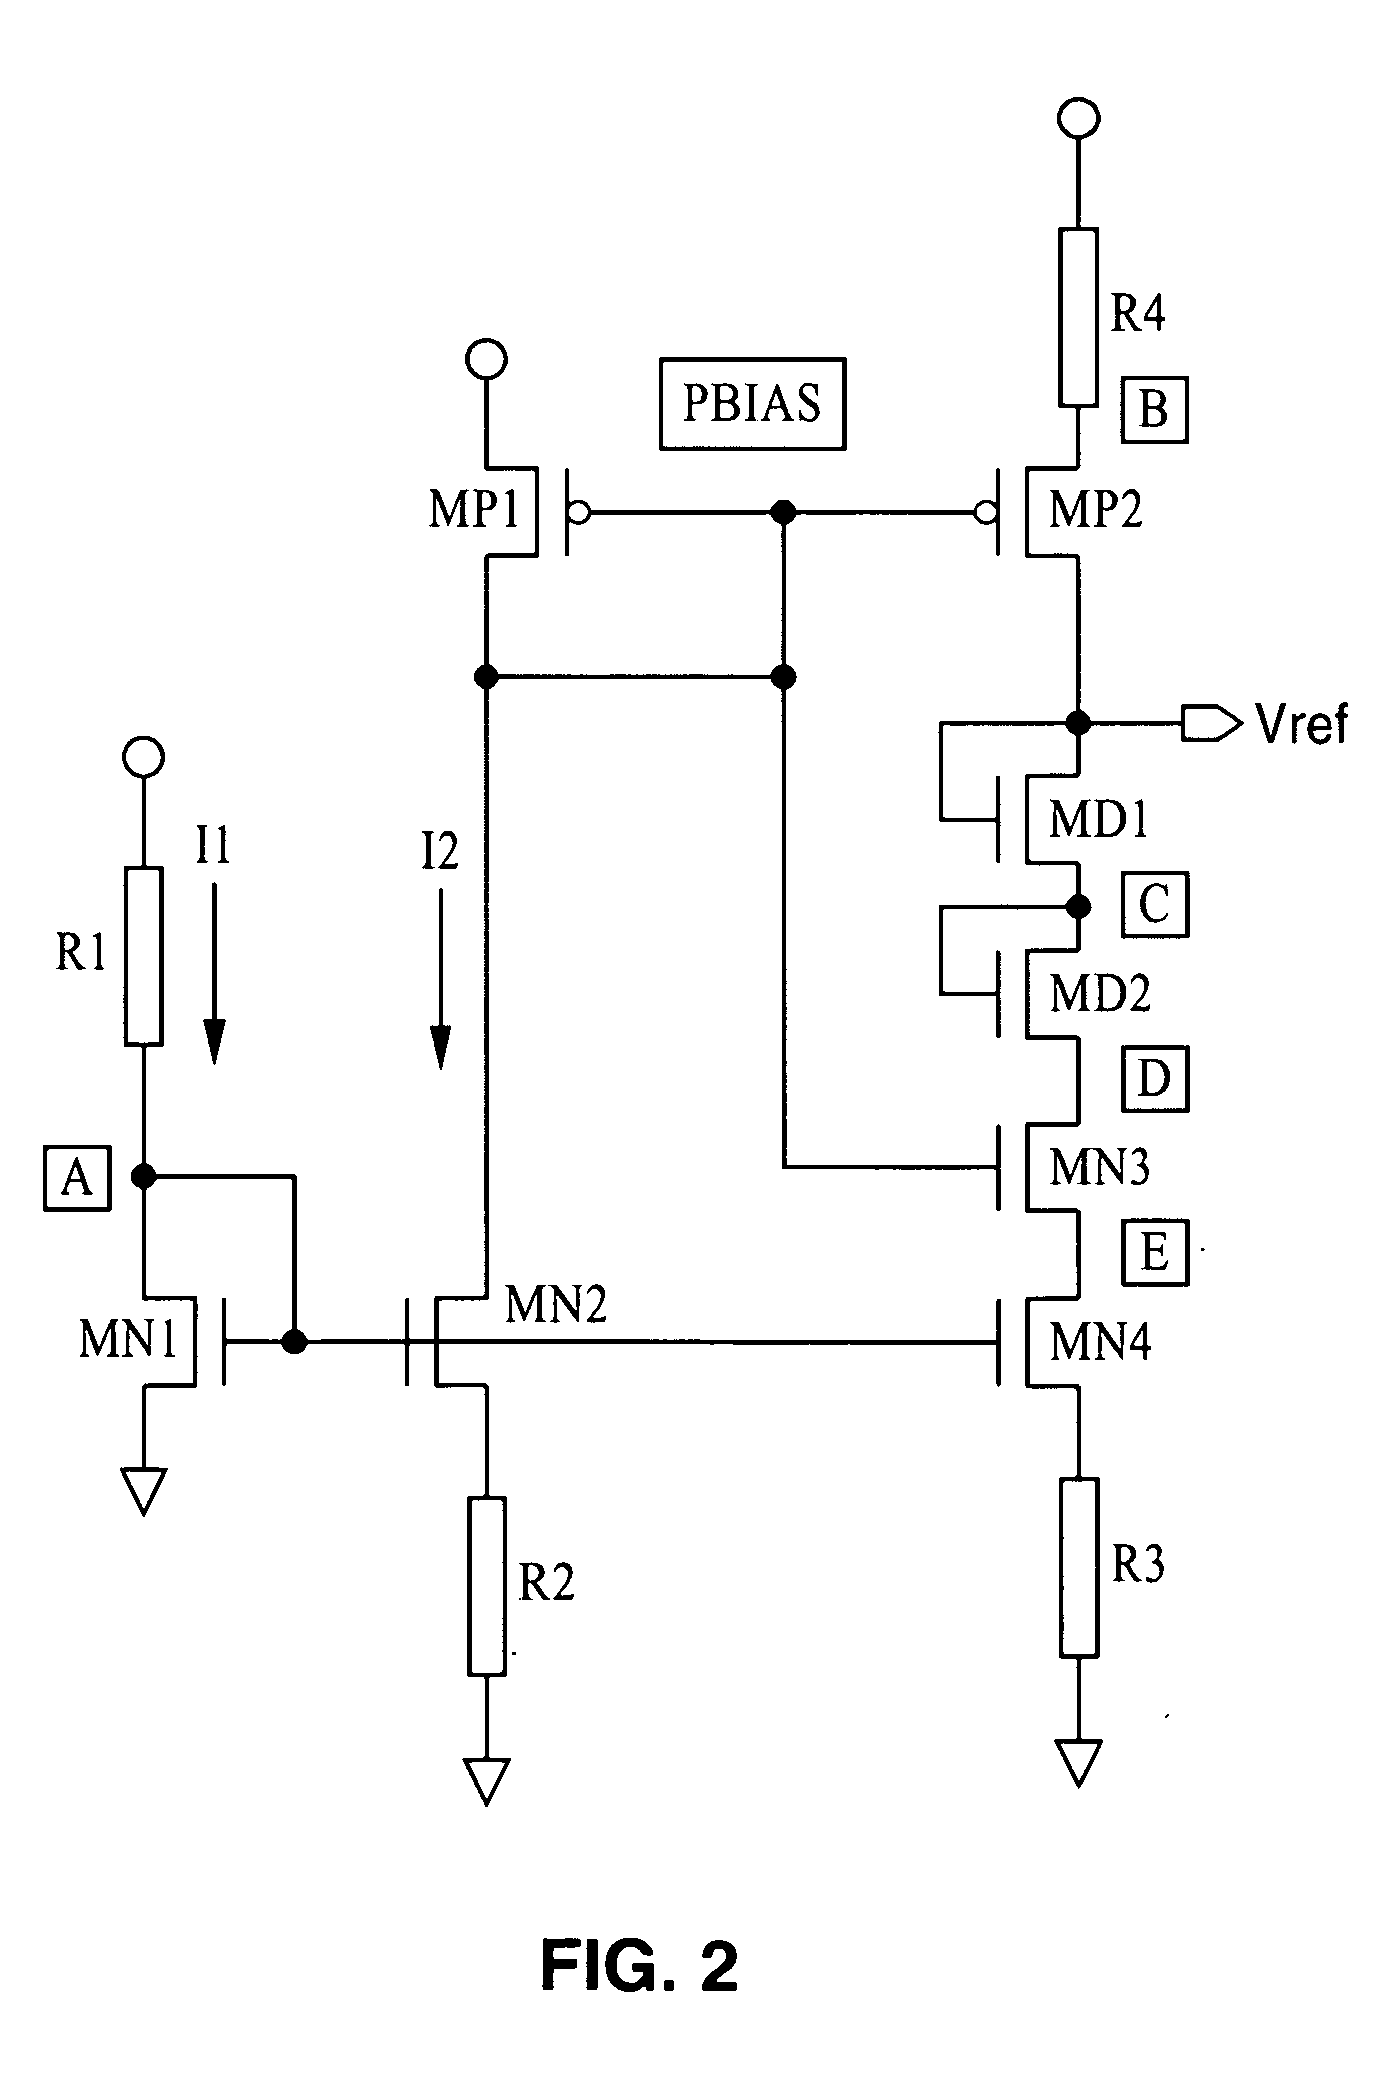 CMOS constant voltage generator